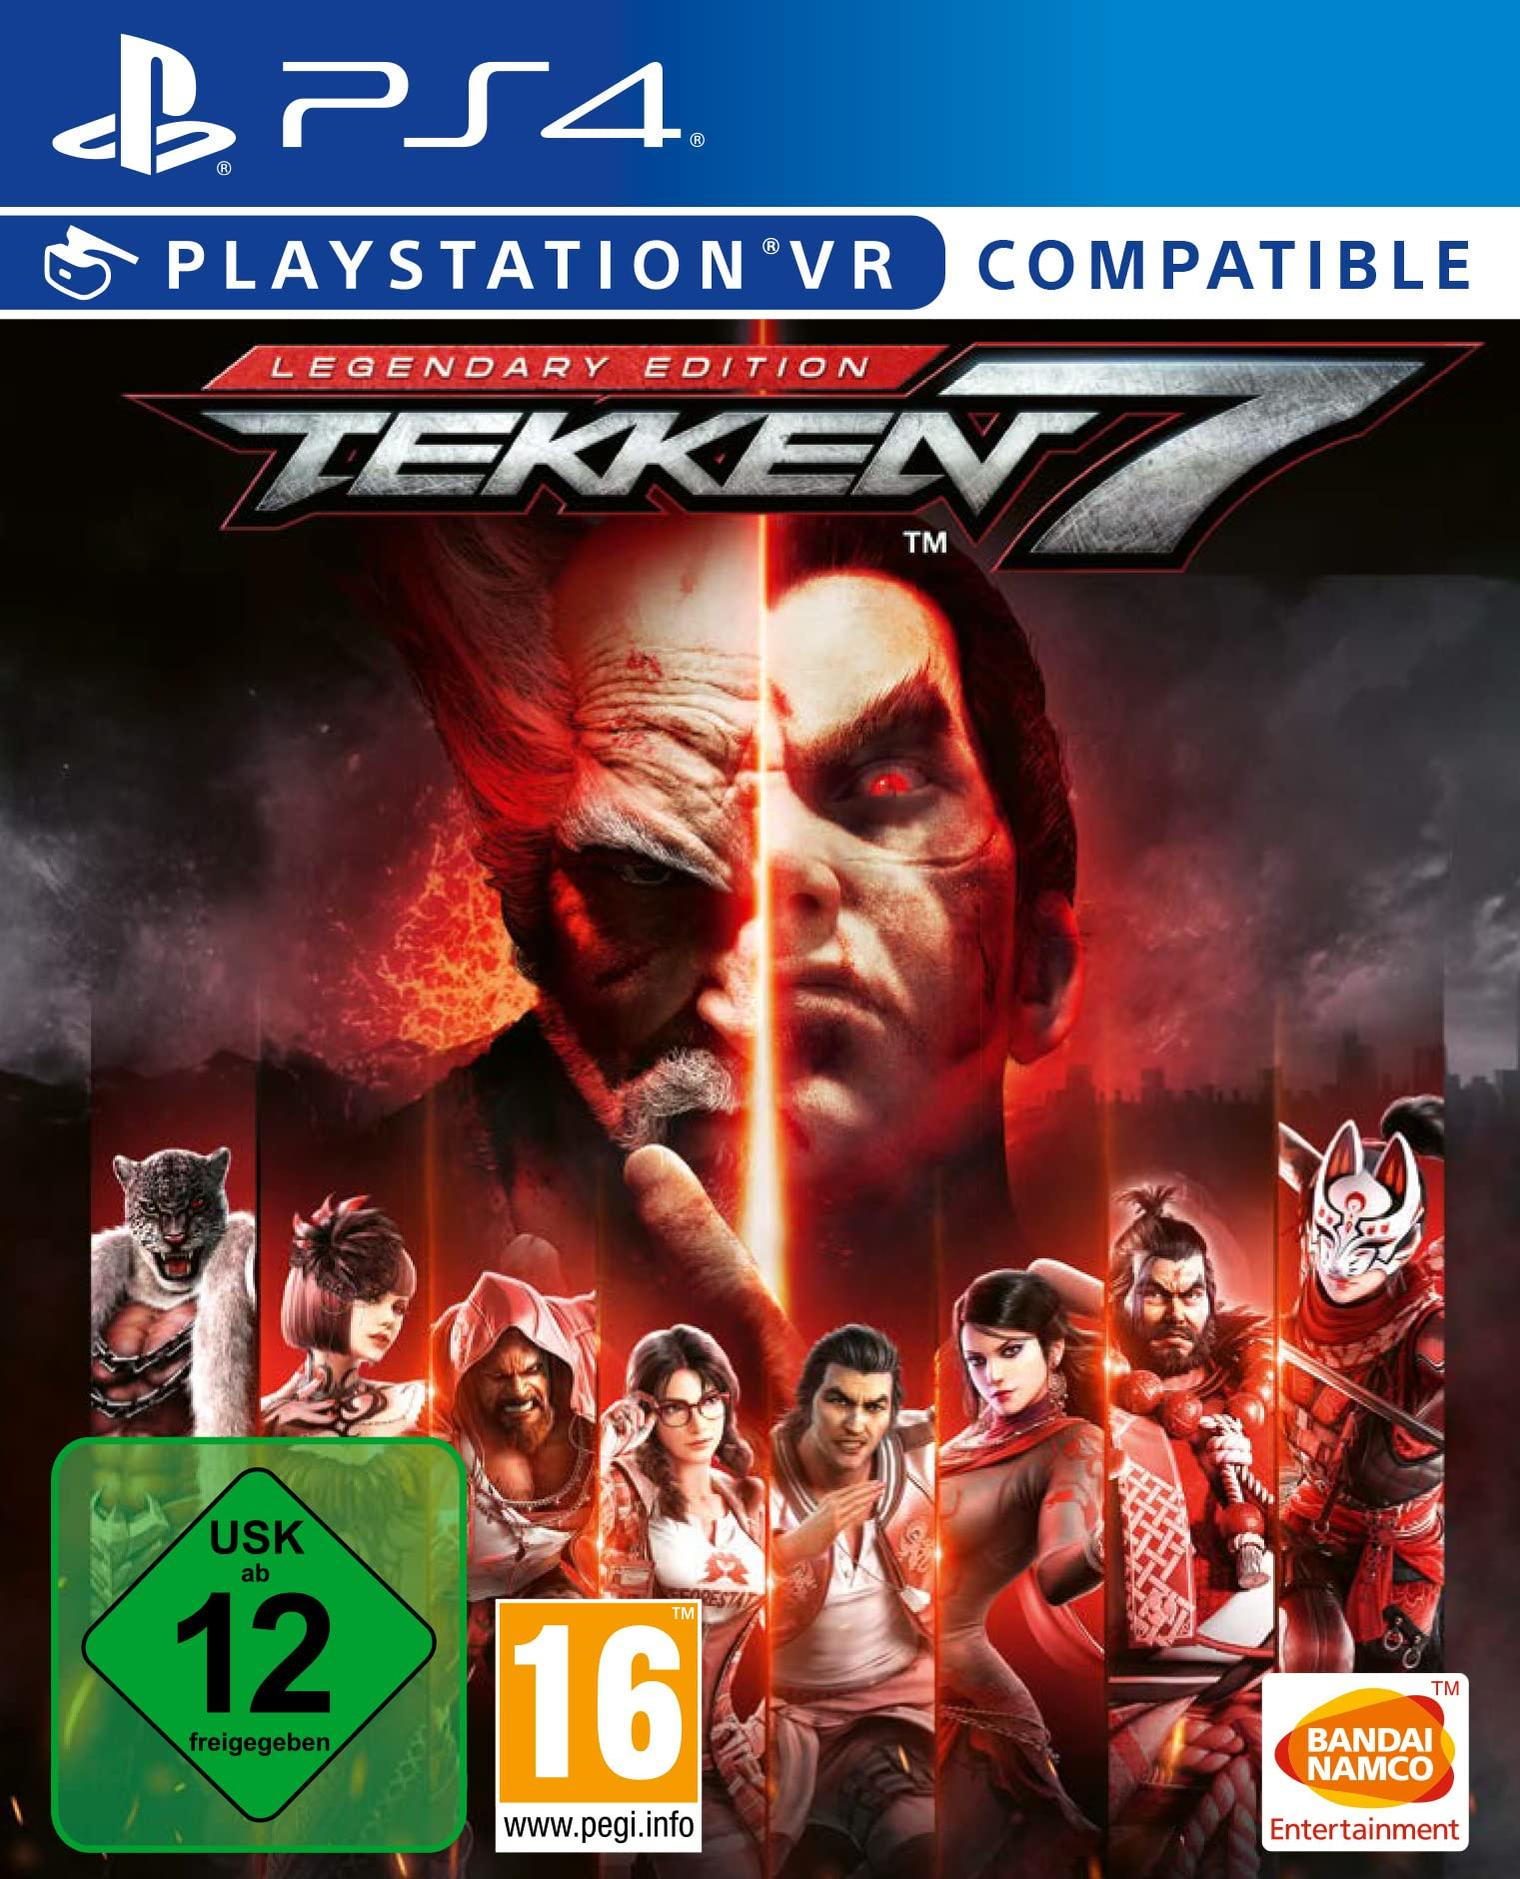 EDITION LEGENDARY 7 PS4 [PlayStation 4] - TEKKEN